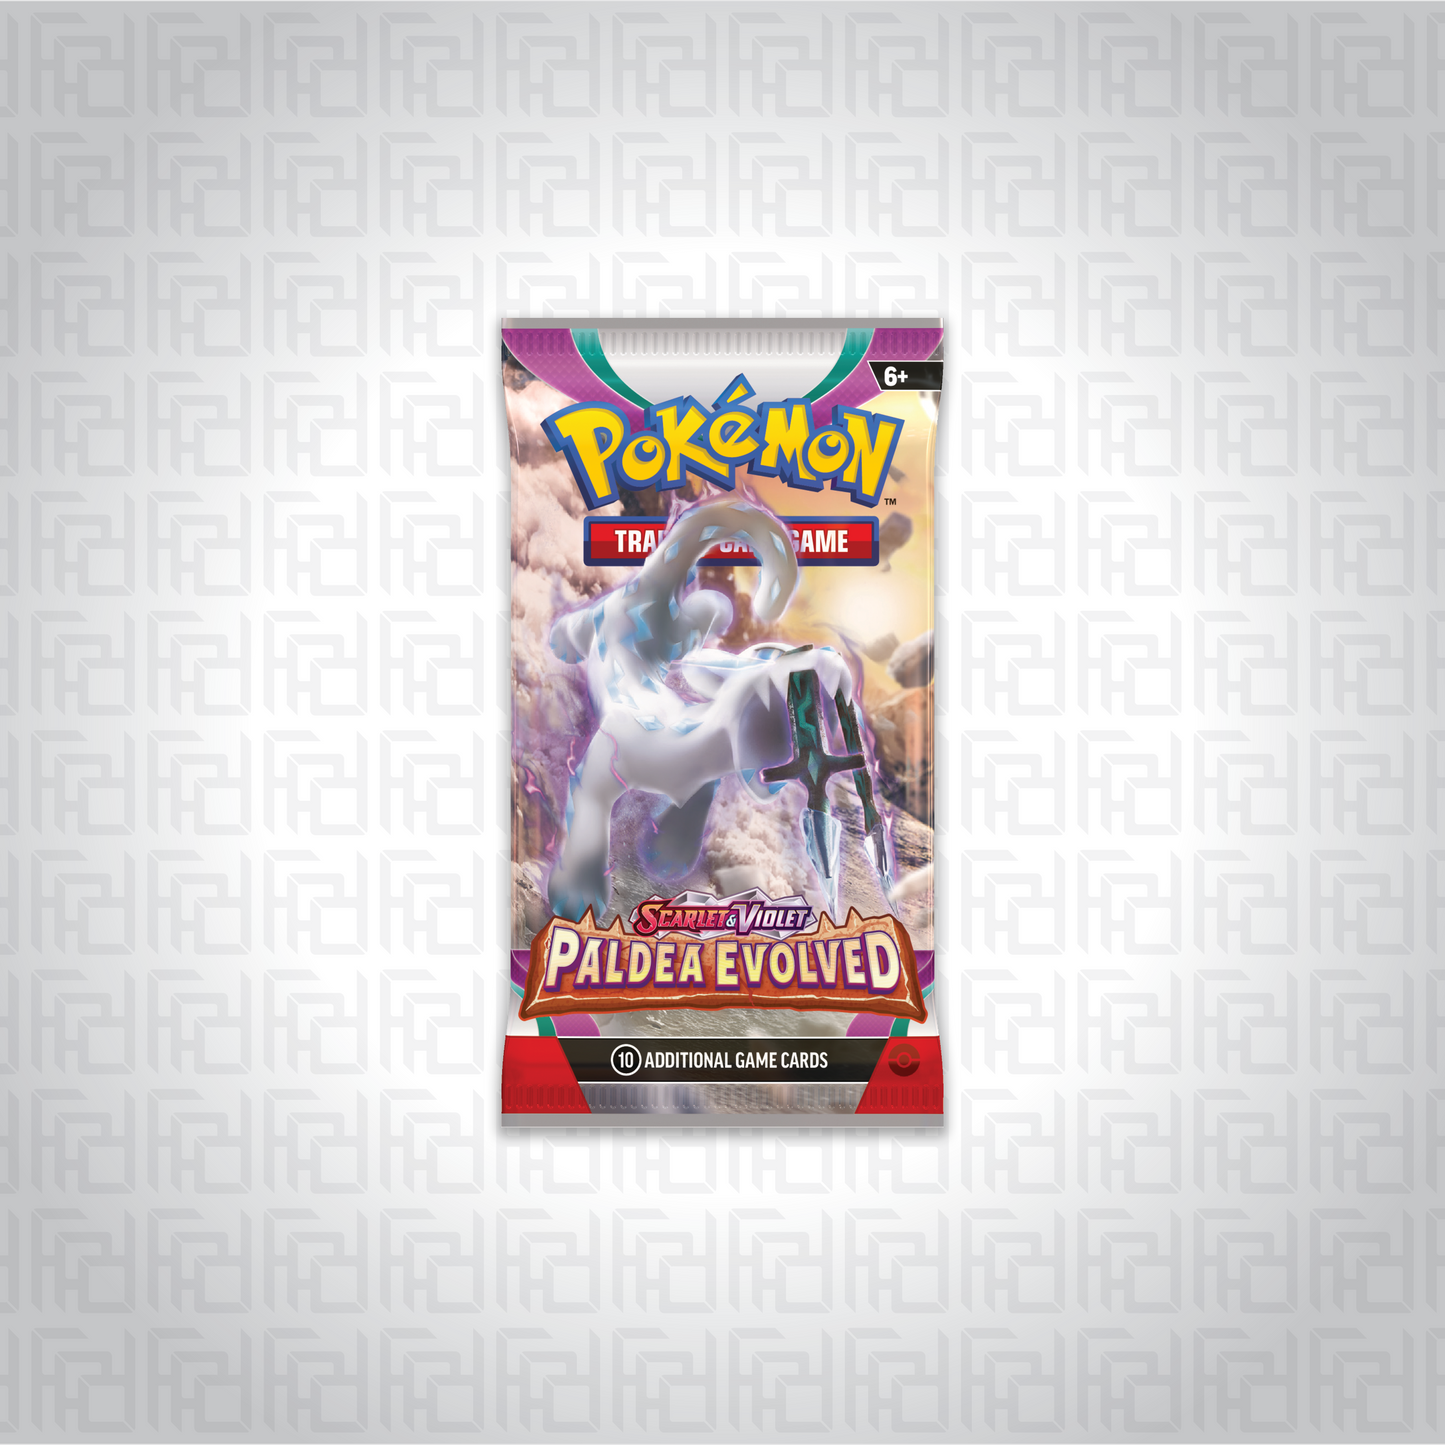 Pokemon Trading Card Game booster pack of Scarlet & Violet—Paldea Evolved expansion.